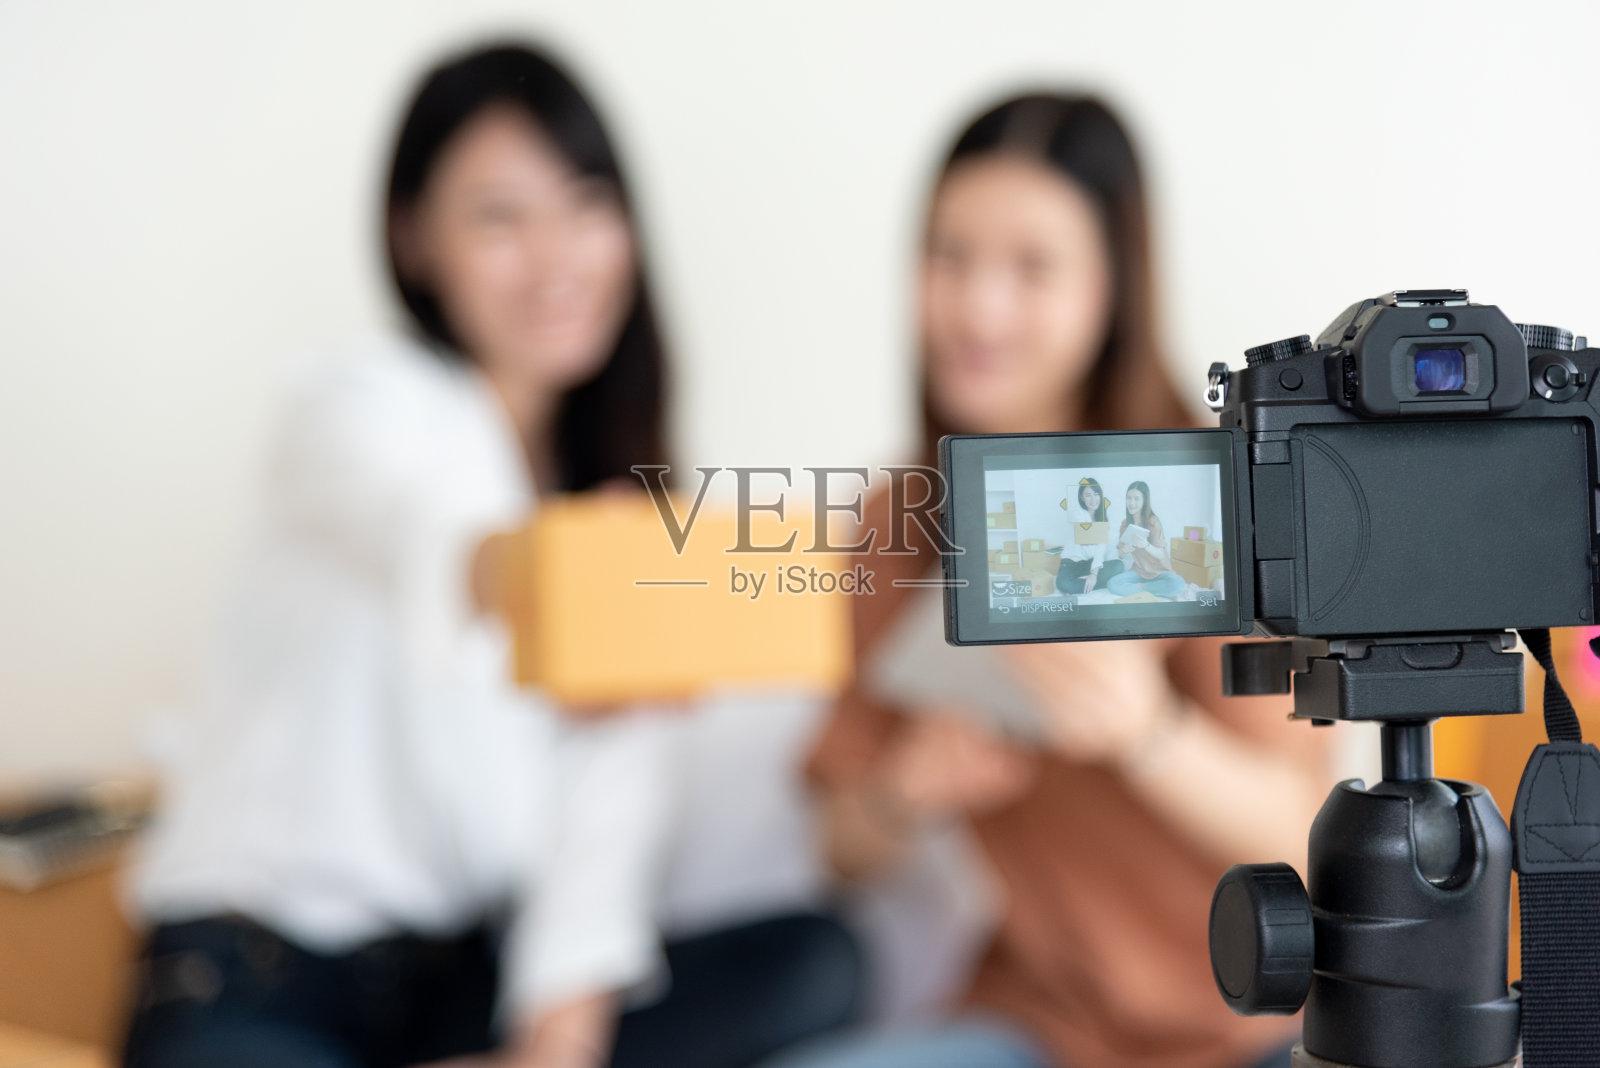 数码摄像机的特写镜头记录了两个女孩展示新产品广告。视频博客和影响者的概念。人们兼职工作和职业。使用现代科技的青少年照片摄影图片